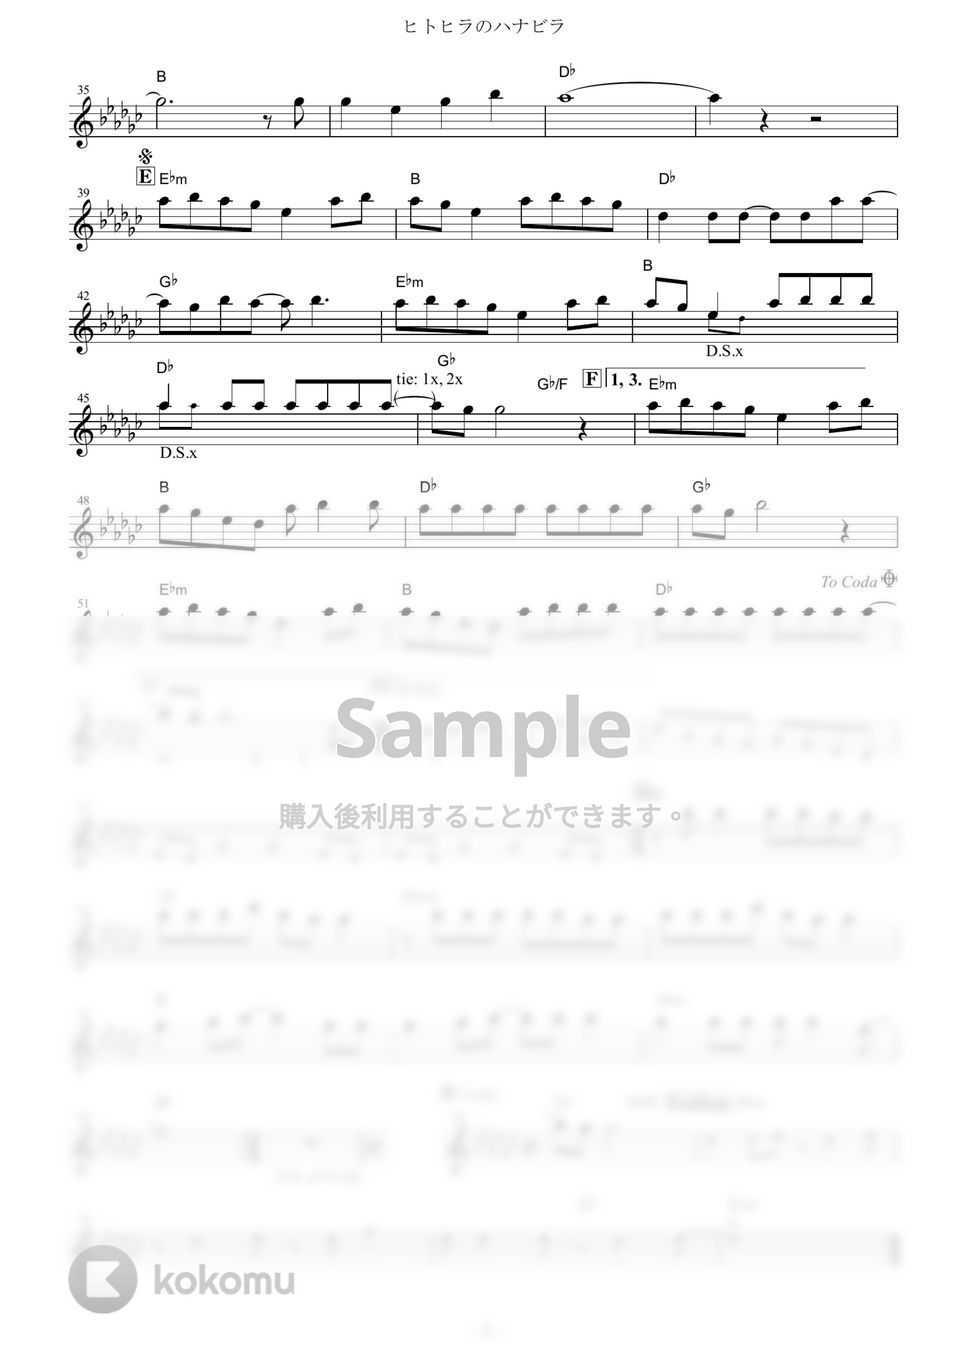 ステレオポニー - ヒトヒラのハナビラ (『BLEACH』 / in C) by muta-sax